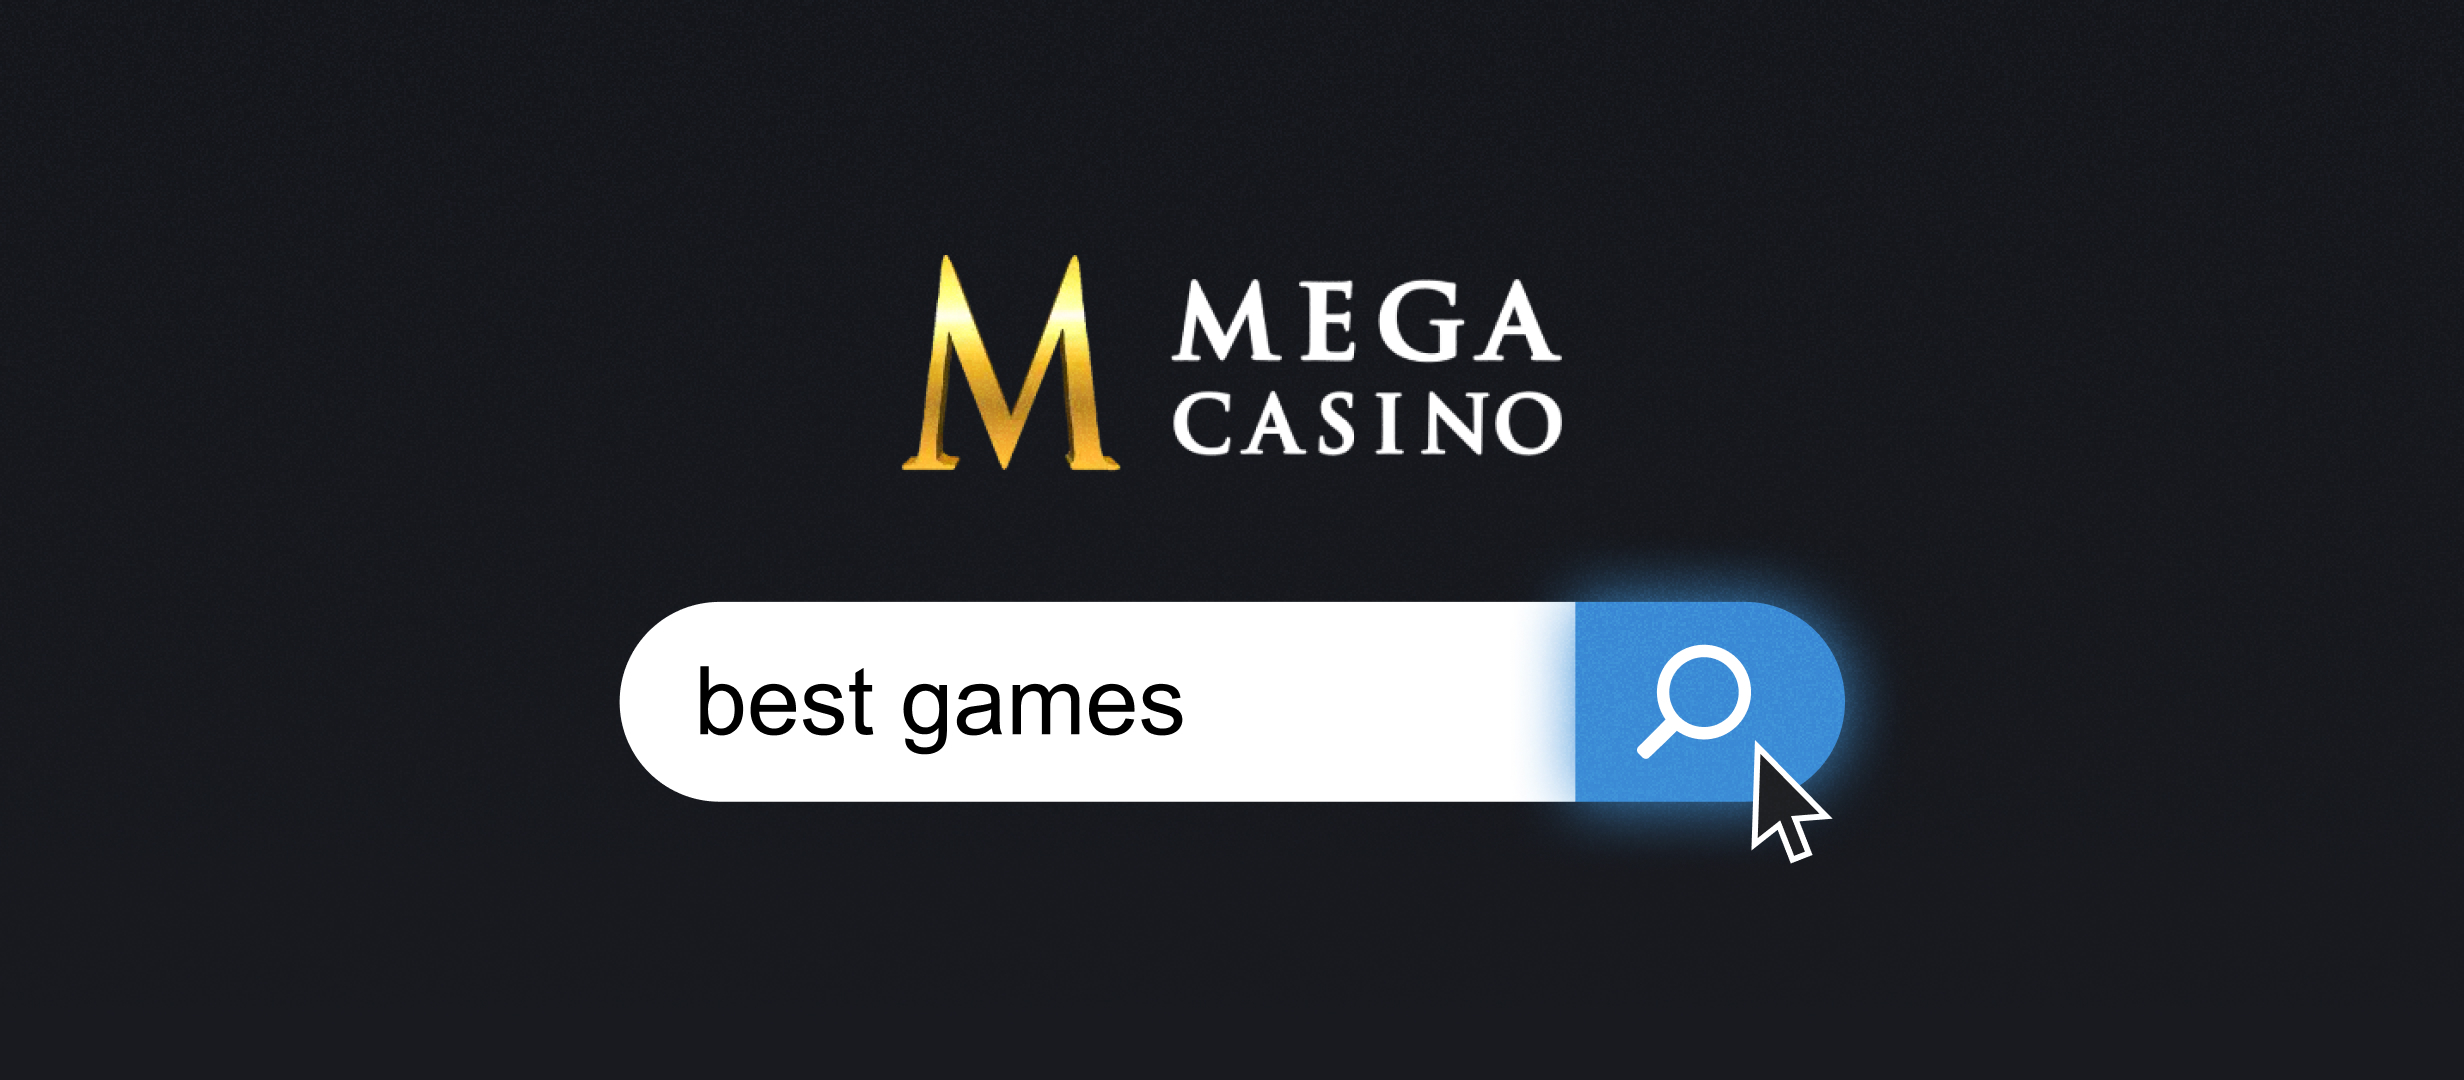 La mejor experiencia de casino ¡en MEGA CASINO!